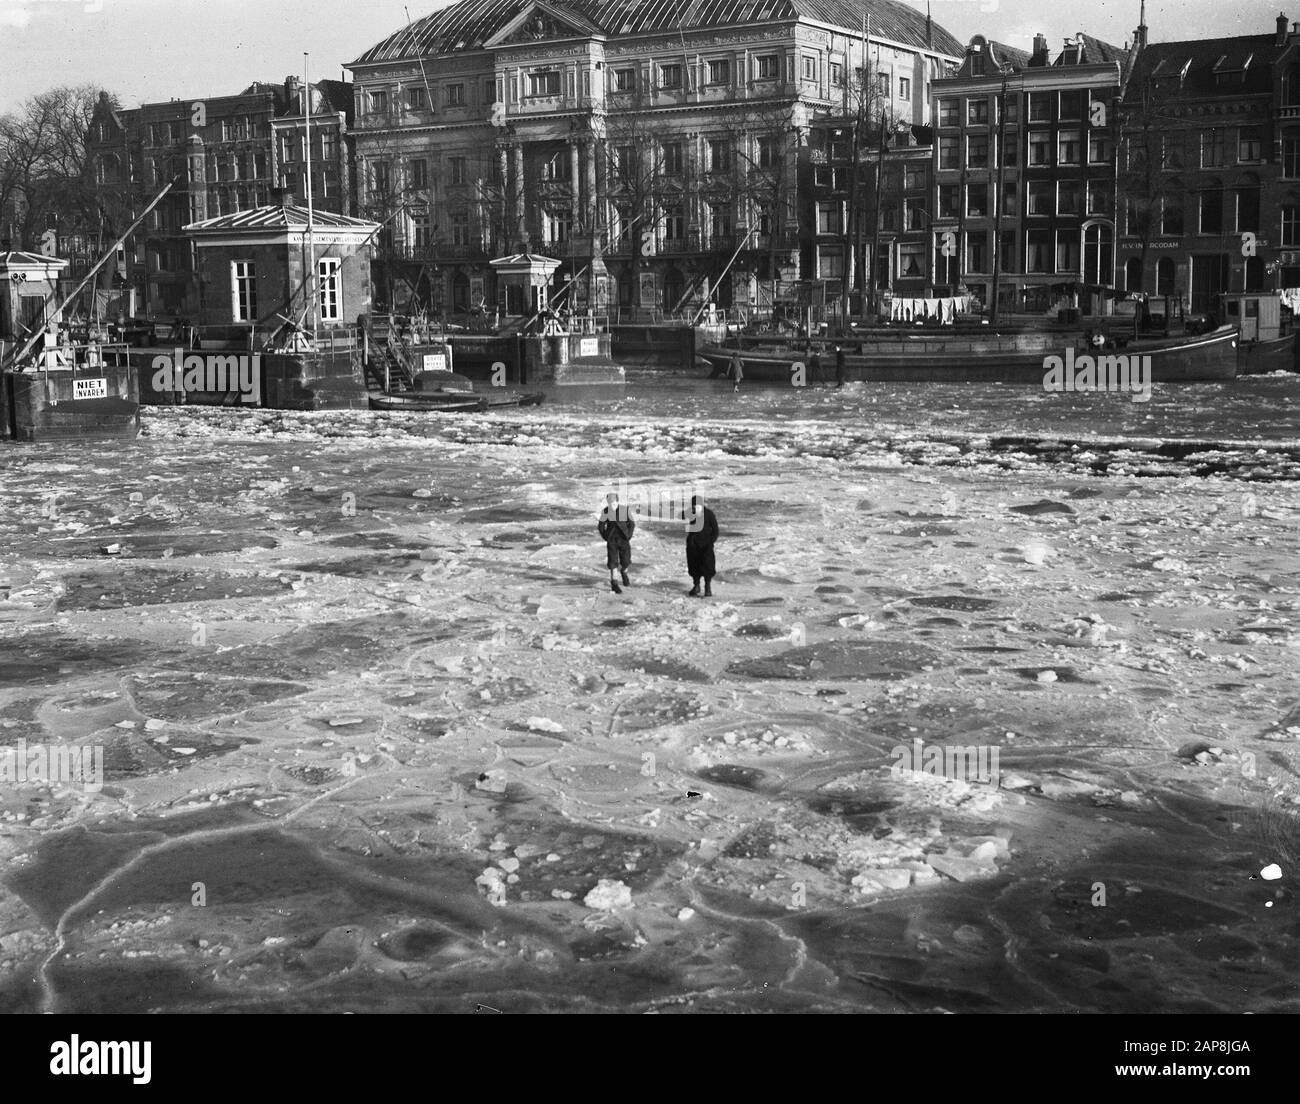 Le premier darediable sur la glace Date : 7 janvier 1947 mots clés : glace Banque D'Images